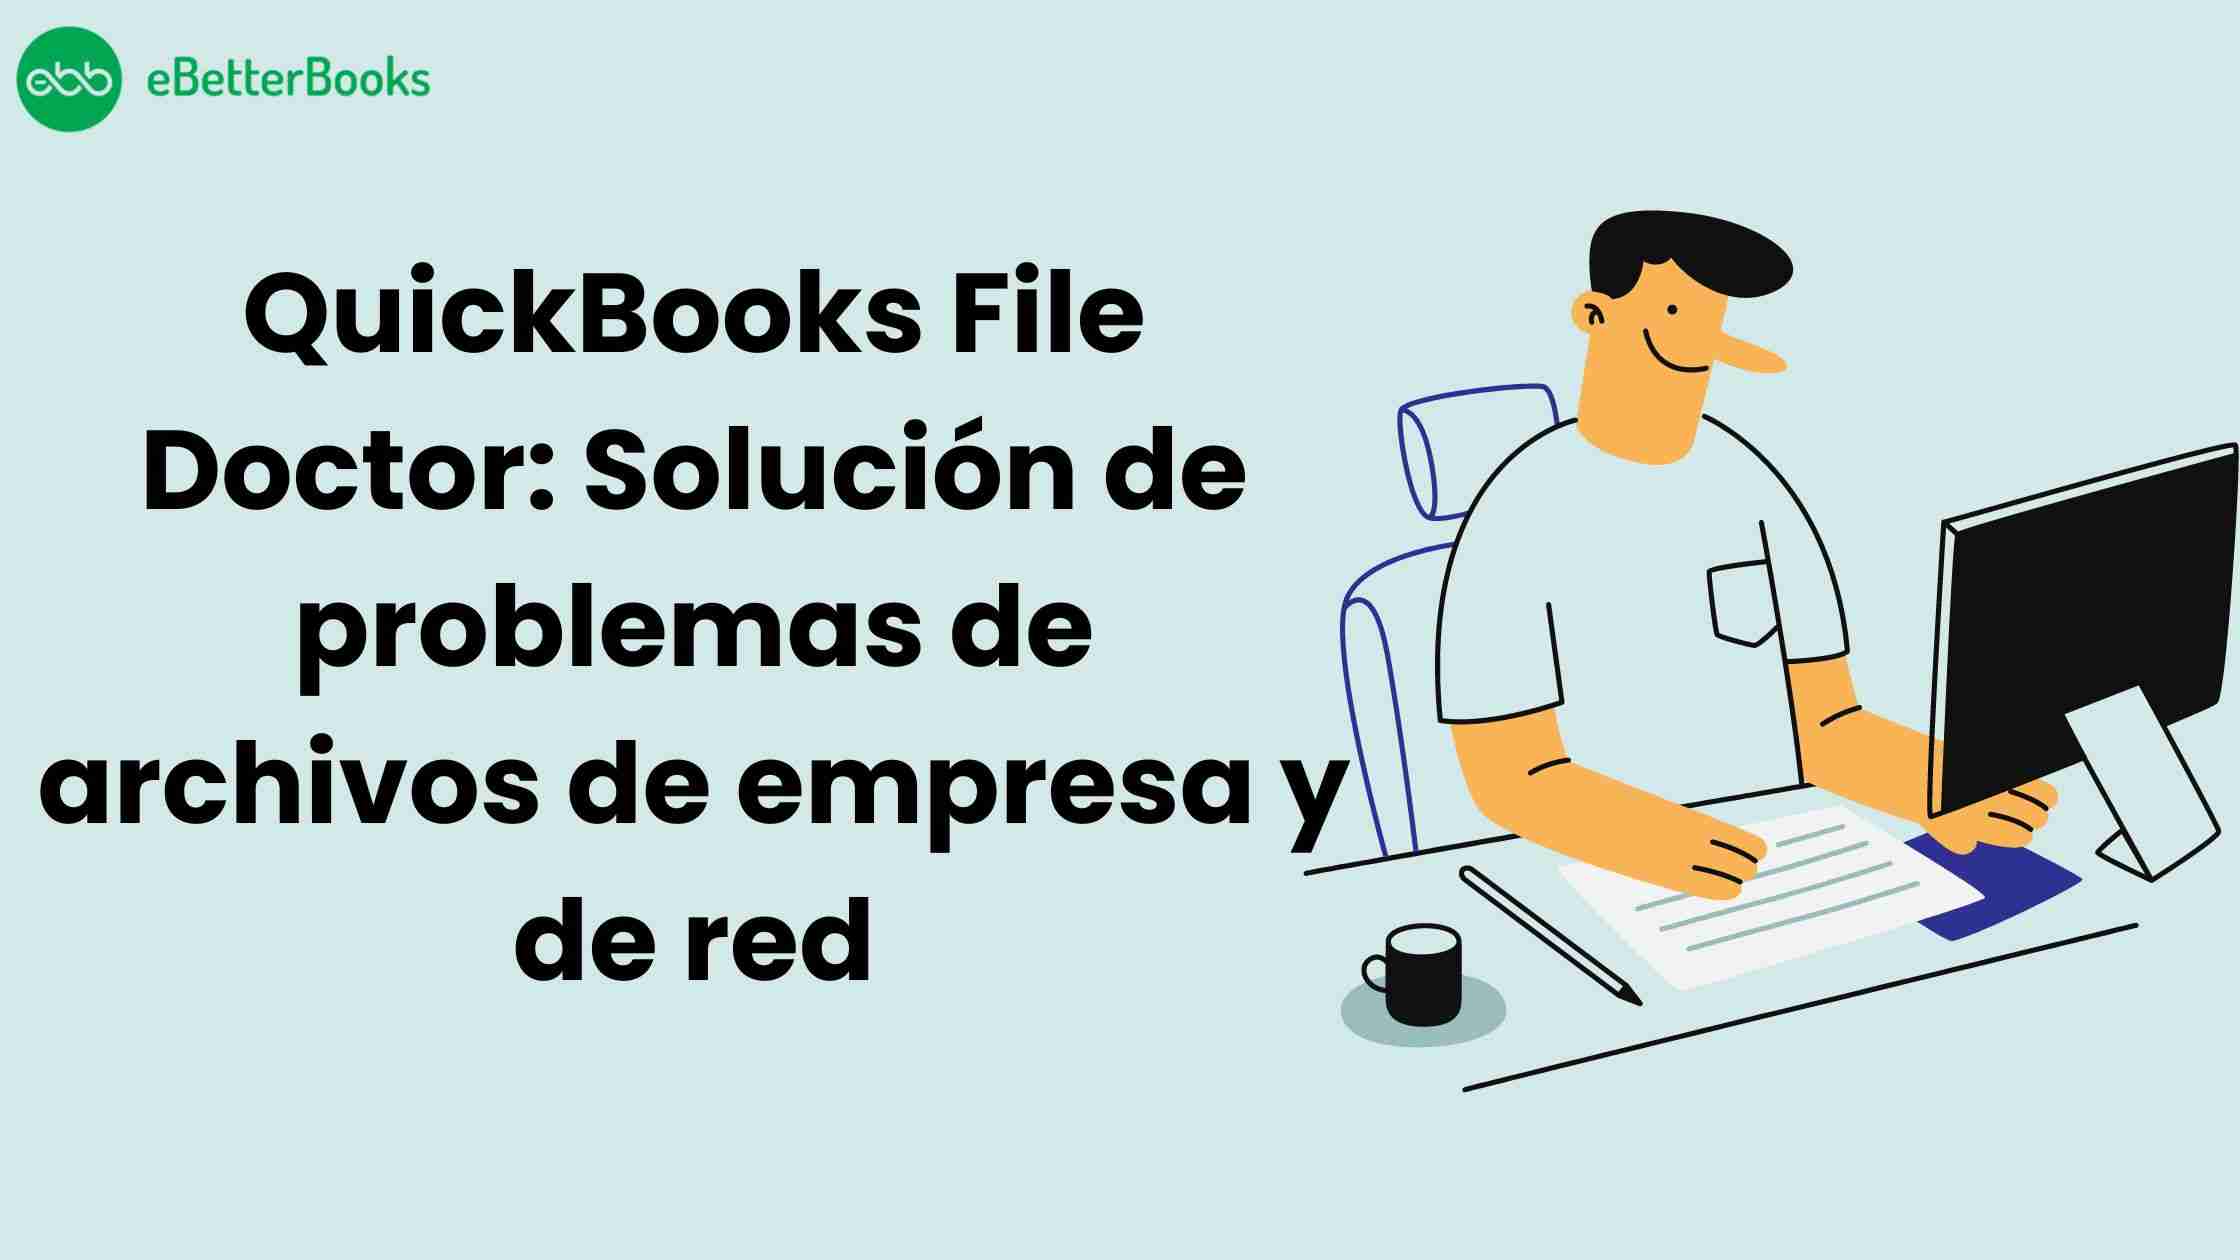 QuickBooks File Doctor: Solución de problemas de archivos de empresa y de red